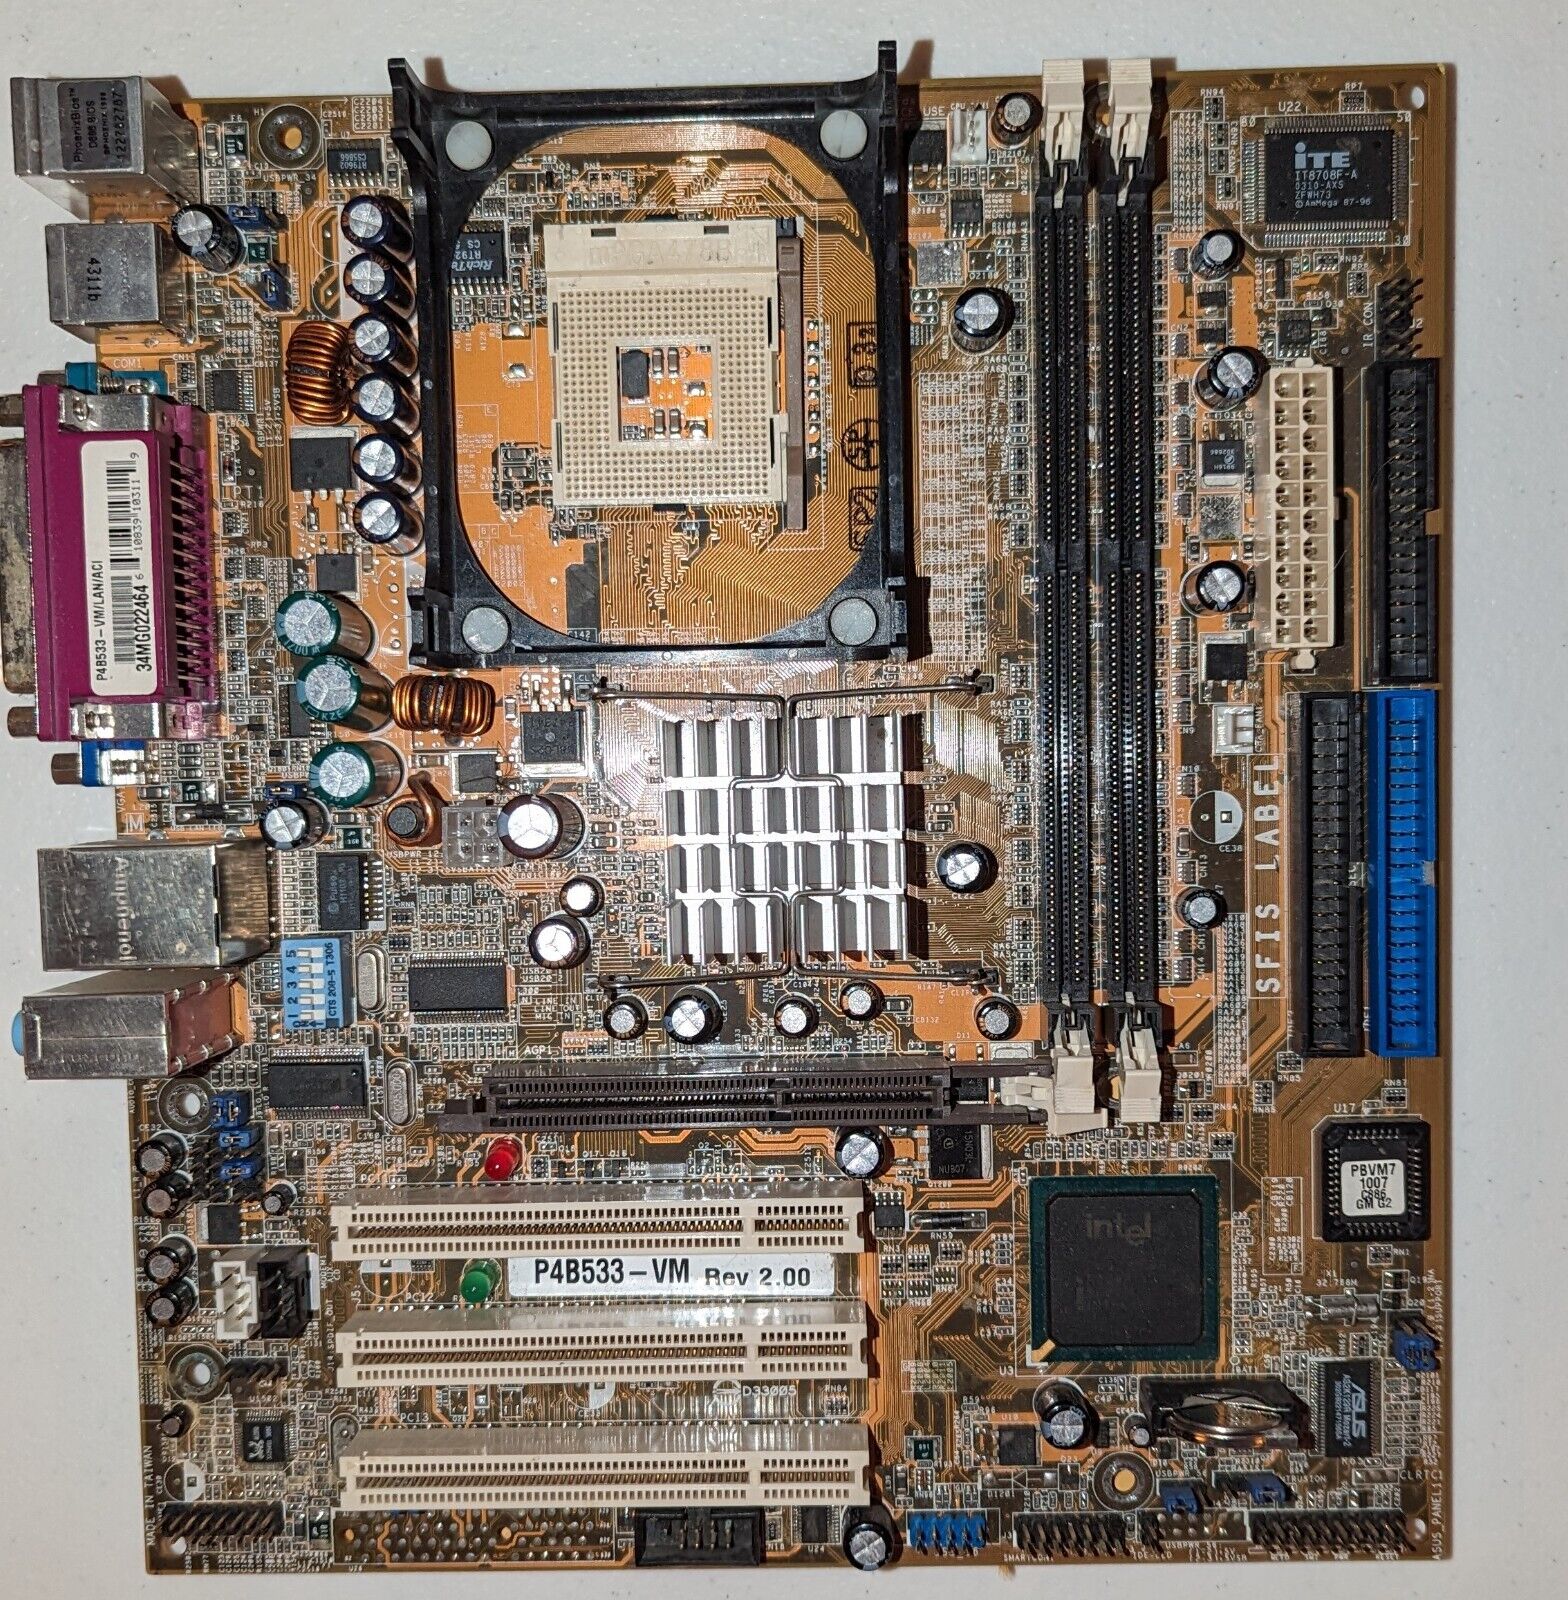 Asus P4B533-VM Motherboard Socket 478 Intel 845G - As-Is